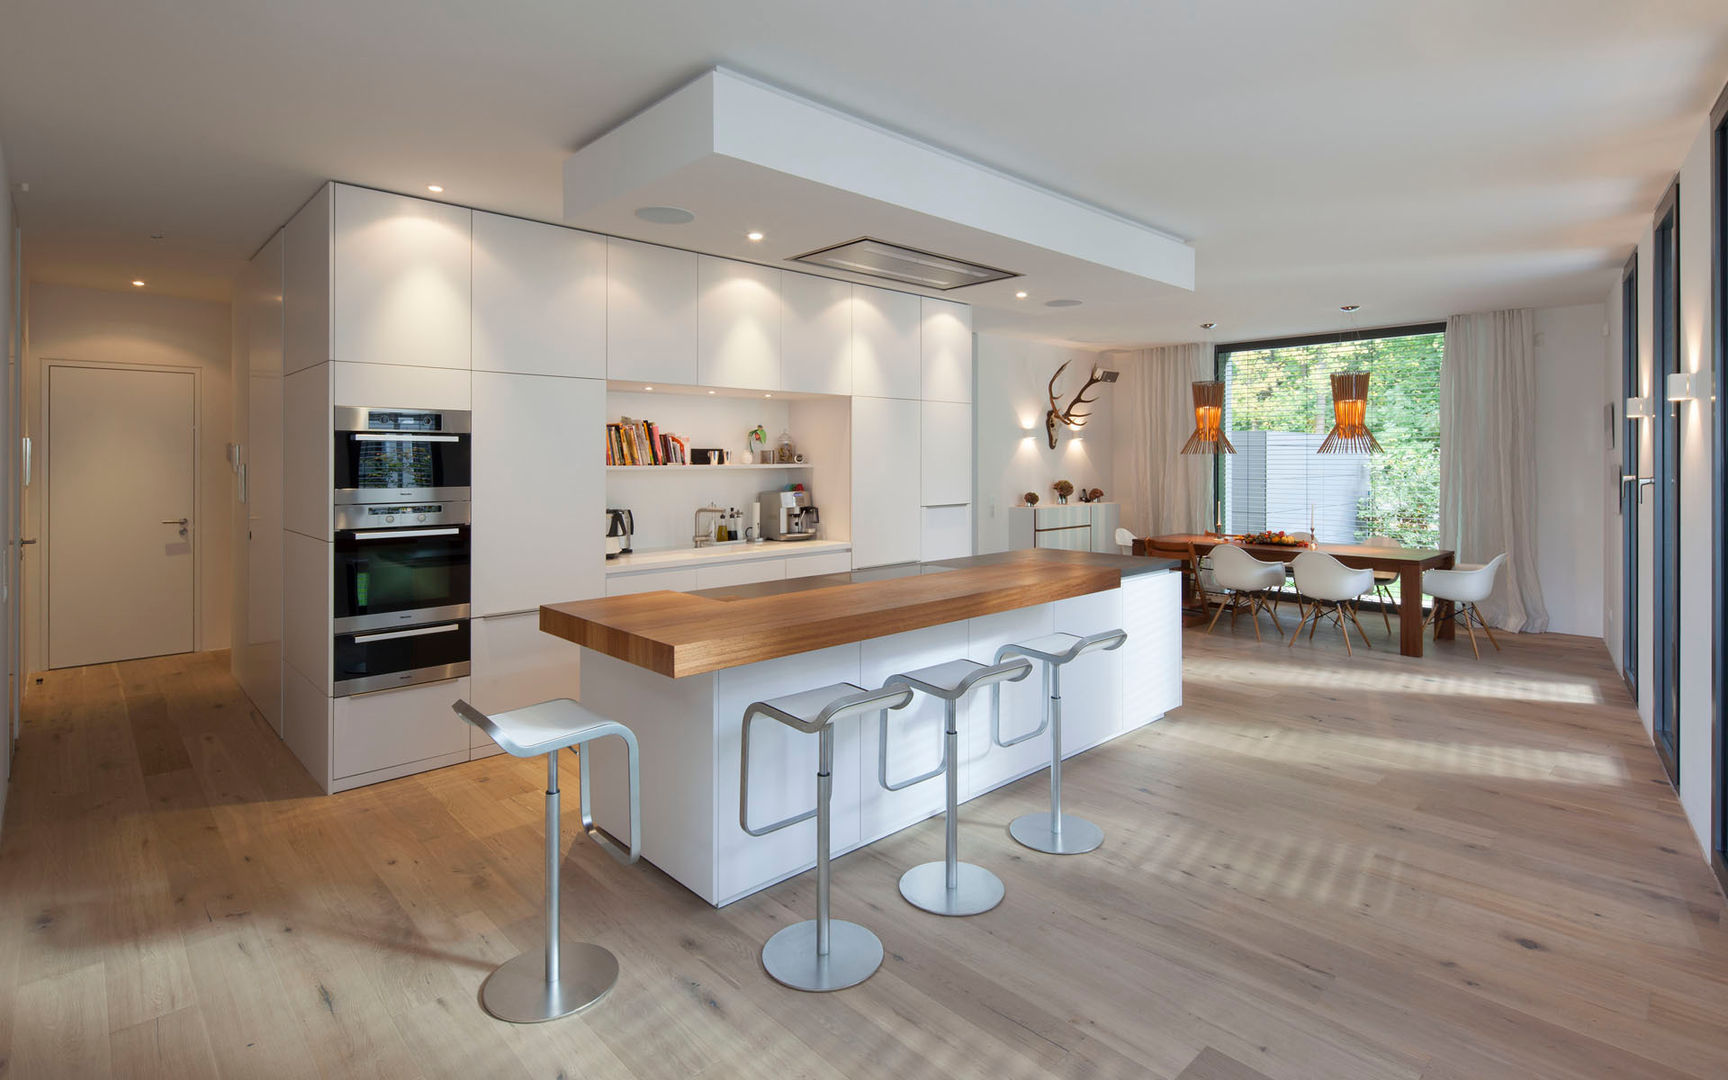 Küche S., rother küchenkonzepte + möbeldesign Gmbh rother küchenkonzepte + möbeldesign Gmbh Dapur Modern